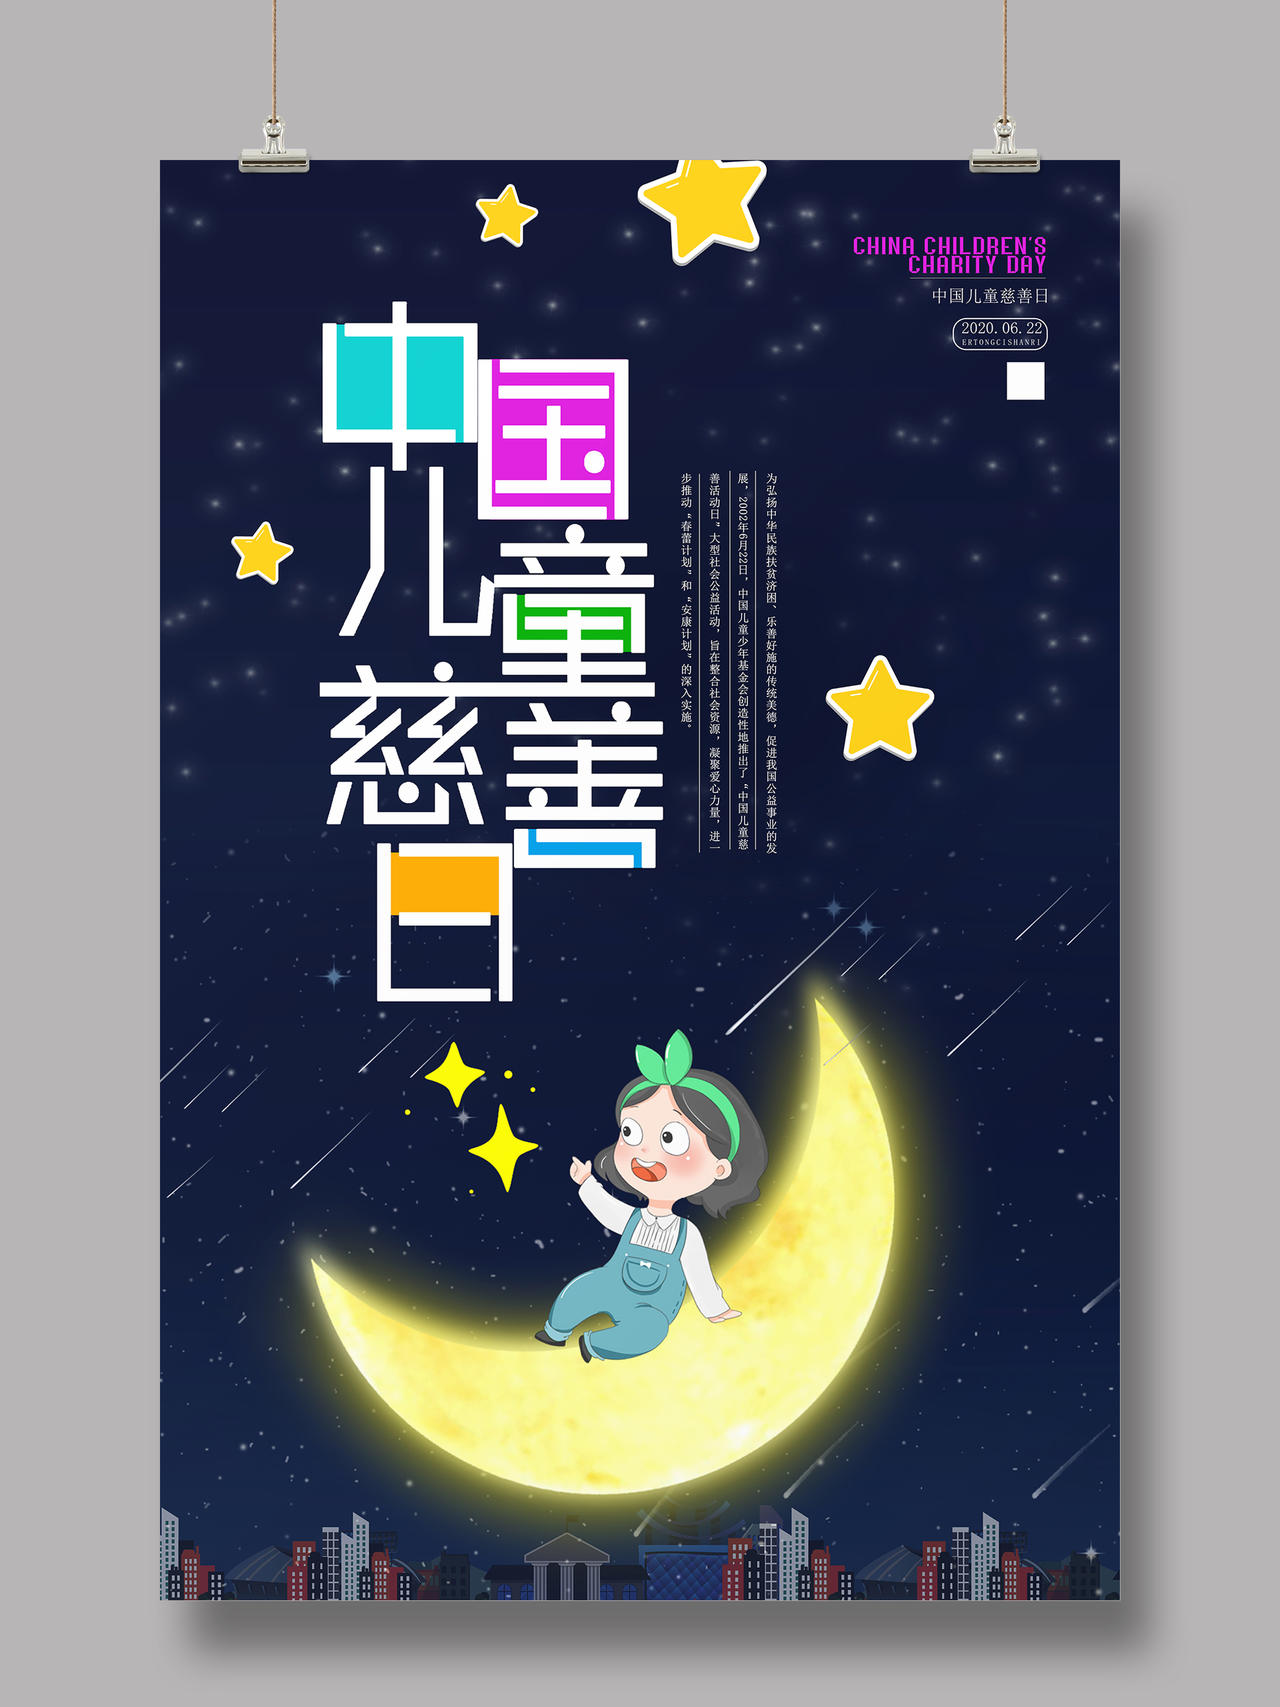 紫色卡通公益中国儿童慈善活动日宣传海报中国儿童慈善日